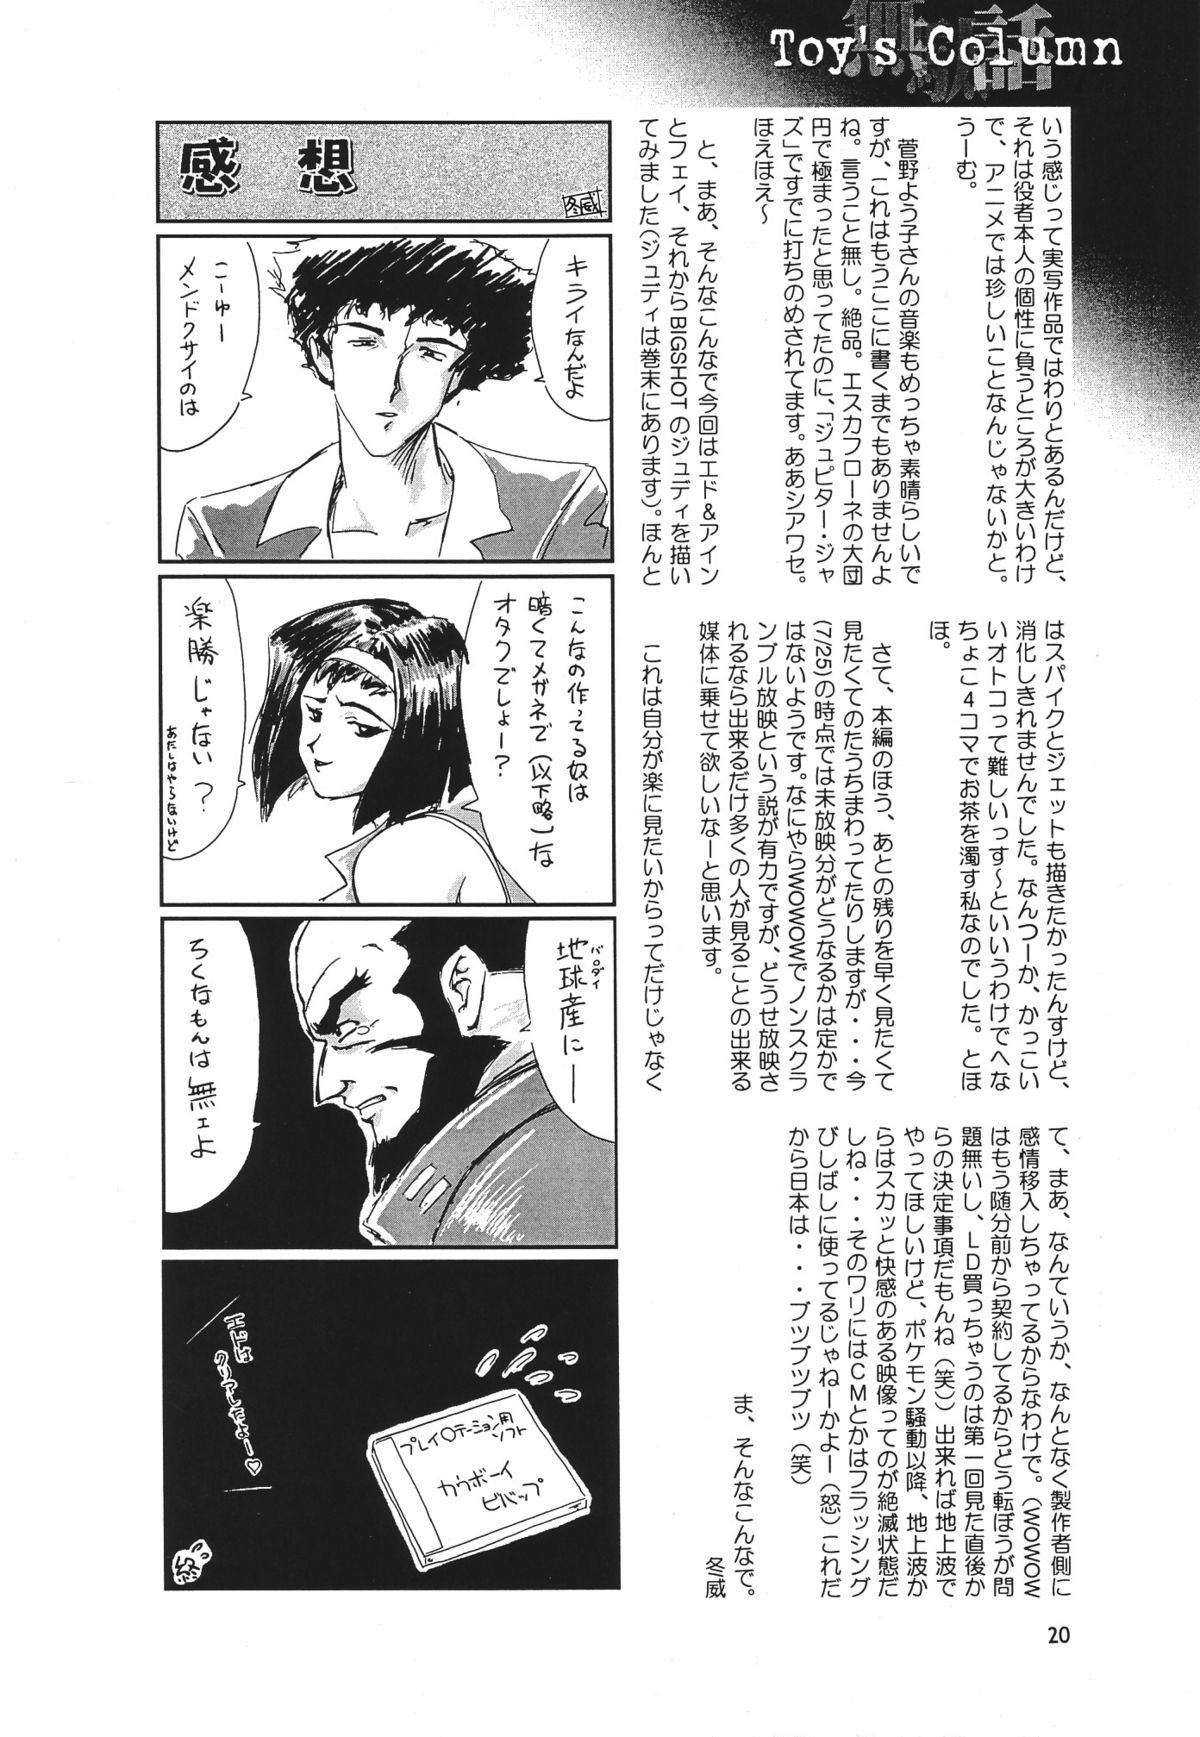 [Seishun No Nigirikobushi!] Favorite Visions 2 (Sailor Moon, AIKa) page 22 full